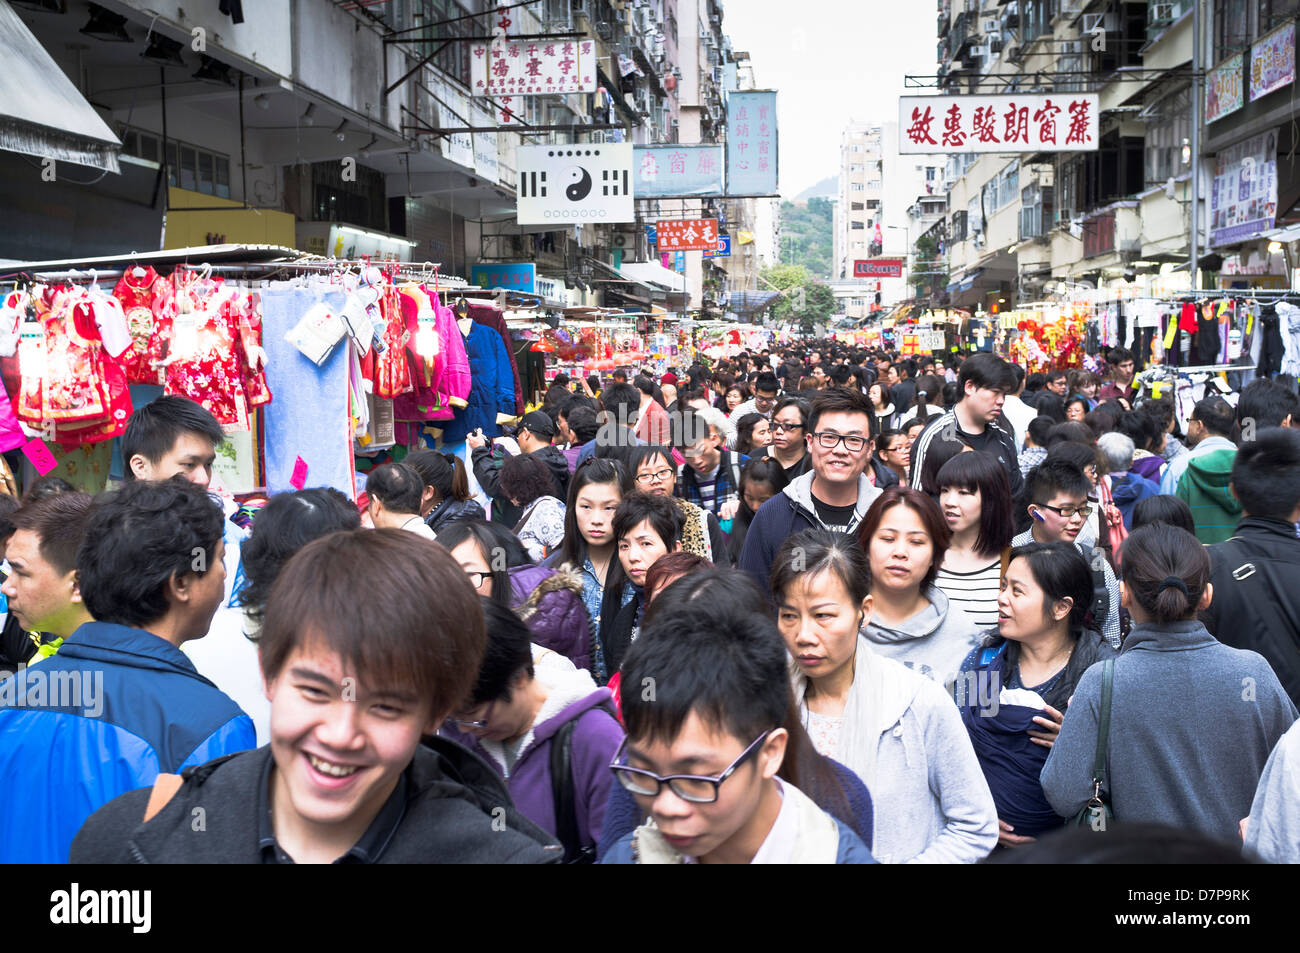 dh Ladies Market tung choi st MONG KOK HONG KONG Folle cinesi mercato gente di strada cina affollata folla mongkok affollato scena stradale Foto Stock